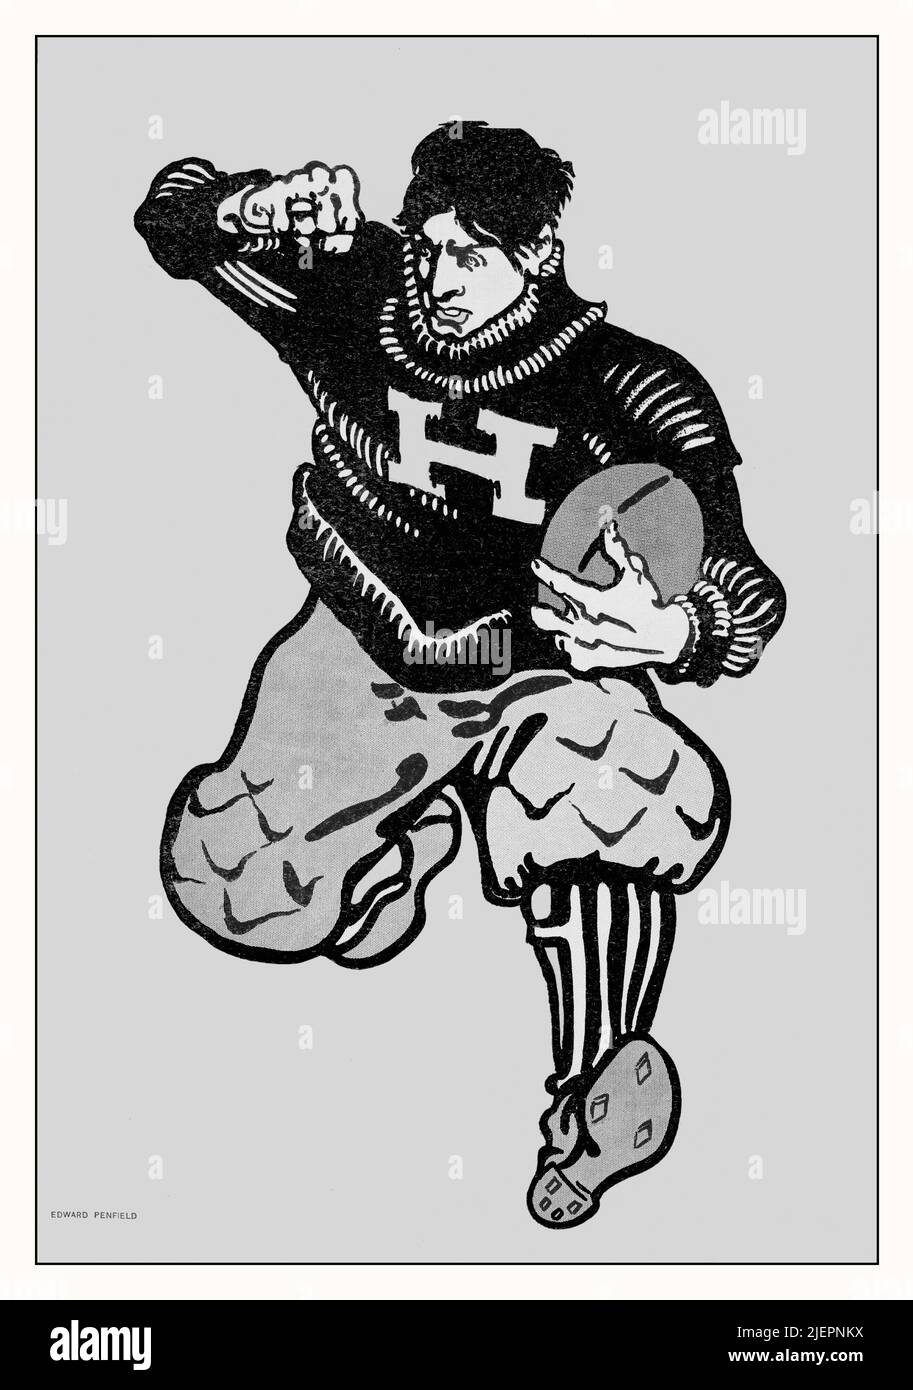 Illustration du début du siècle 20th par Edward Penfield (1866-1925) sur la couverture de collier's, un magazine d'intérêt général américain présentant un footballeur américain. Banque D'Images